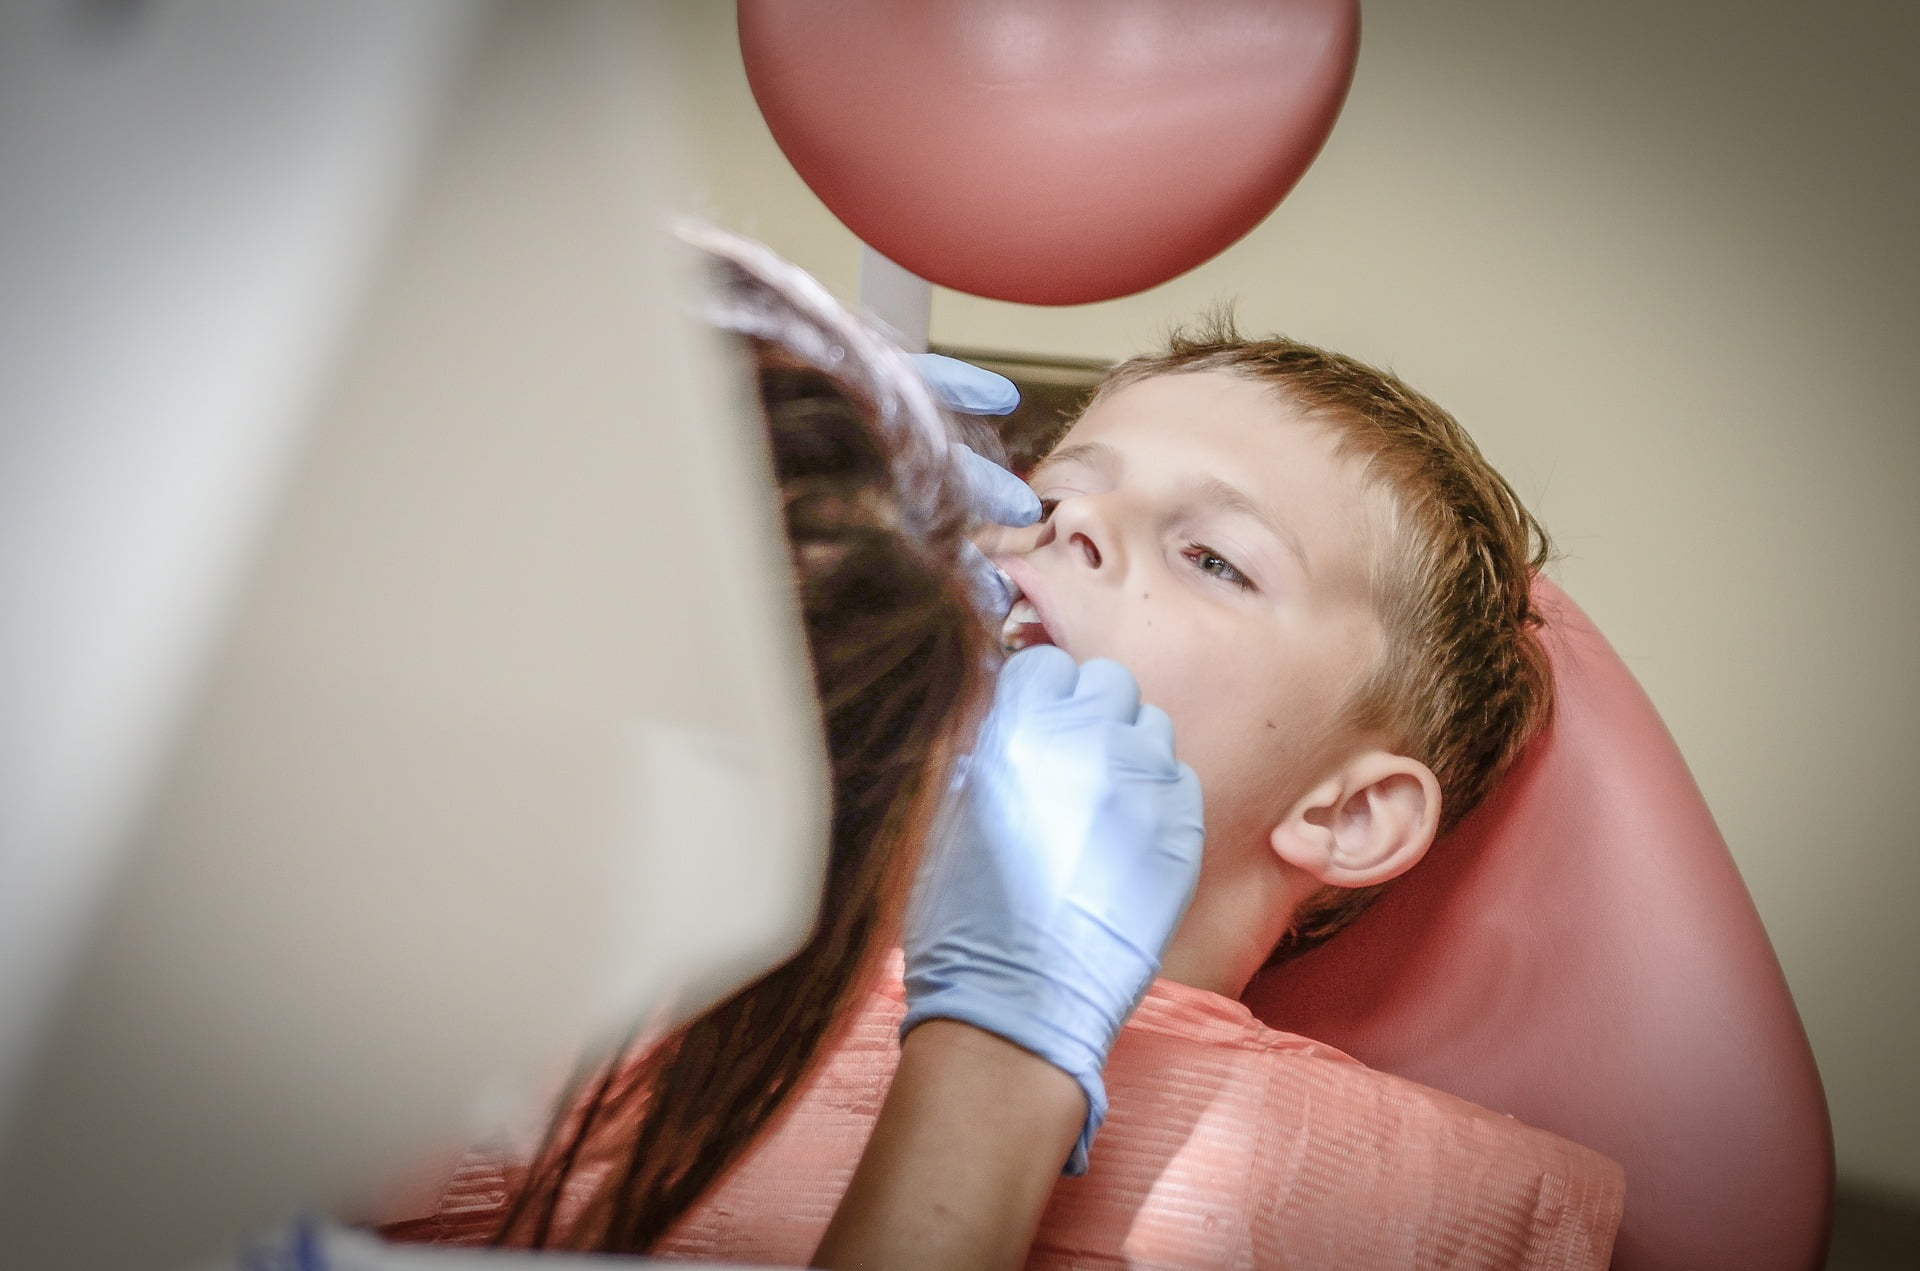 Cariile dentare la copii. Prevenirea cariilor dentare timpurii